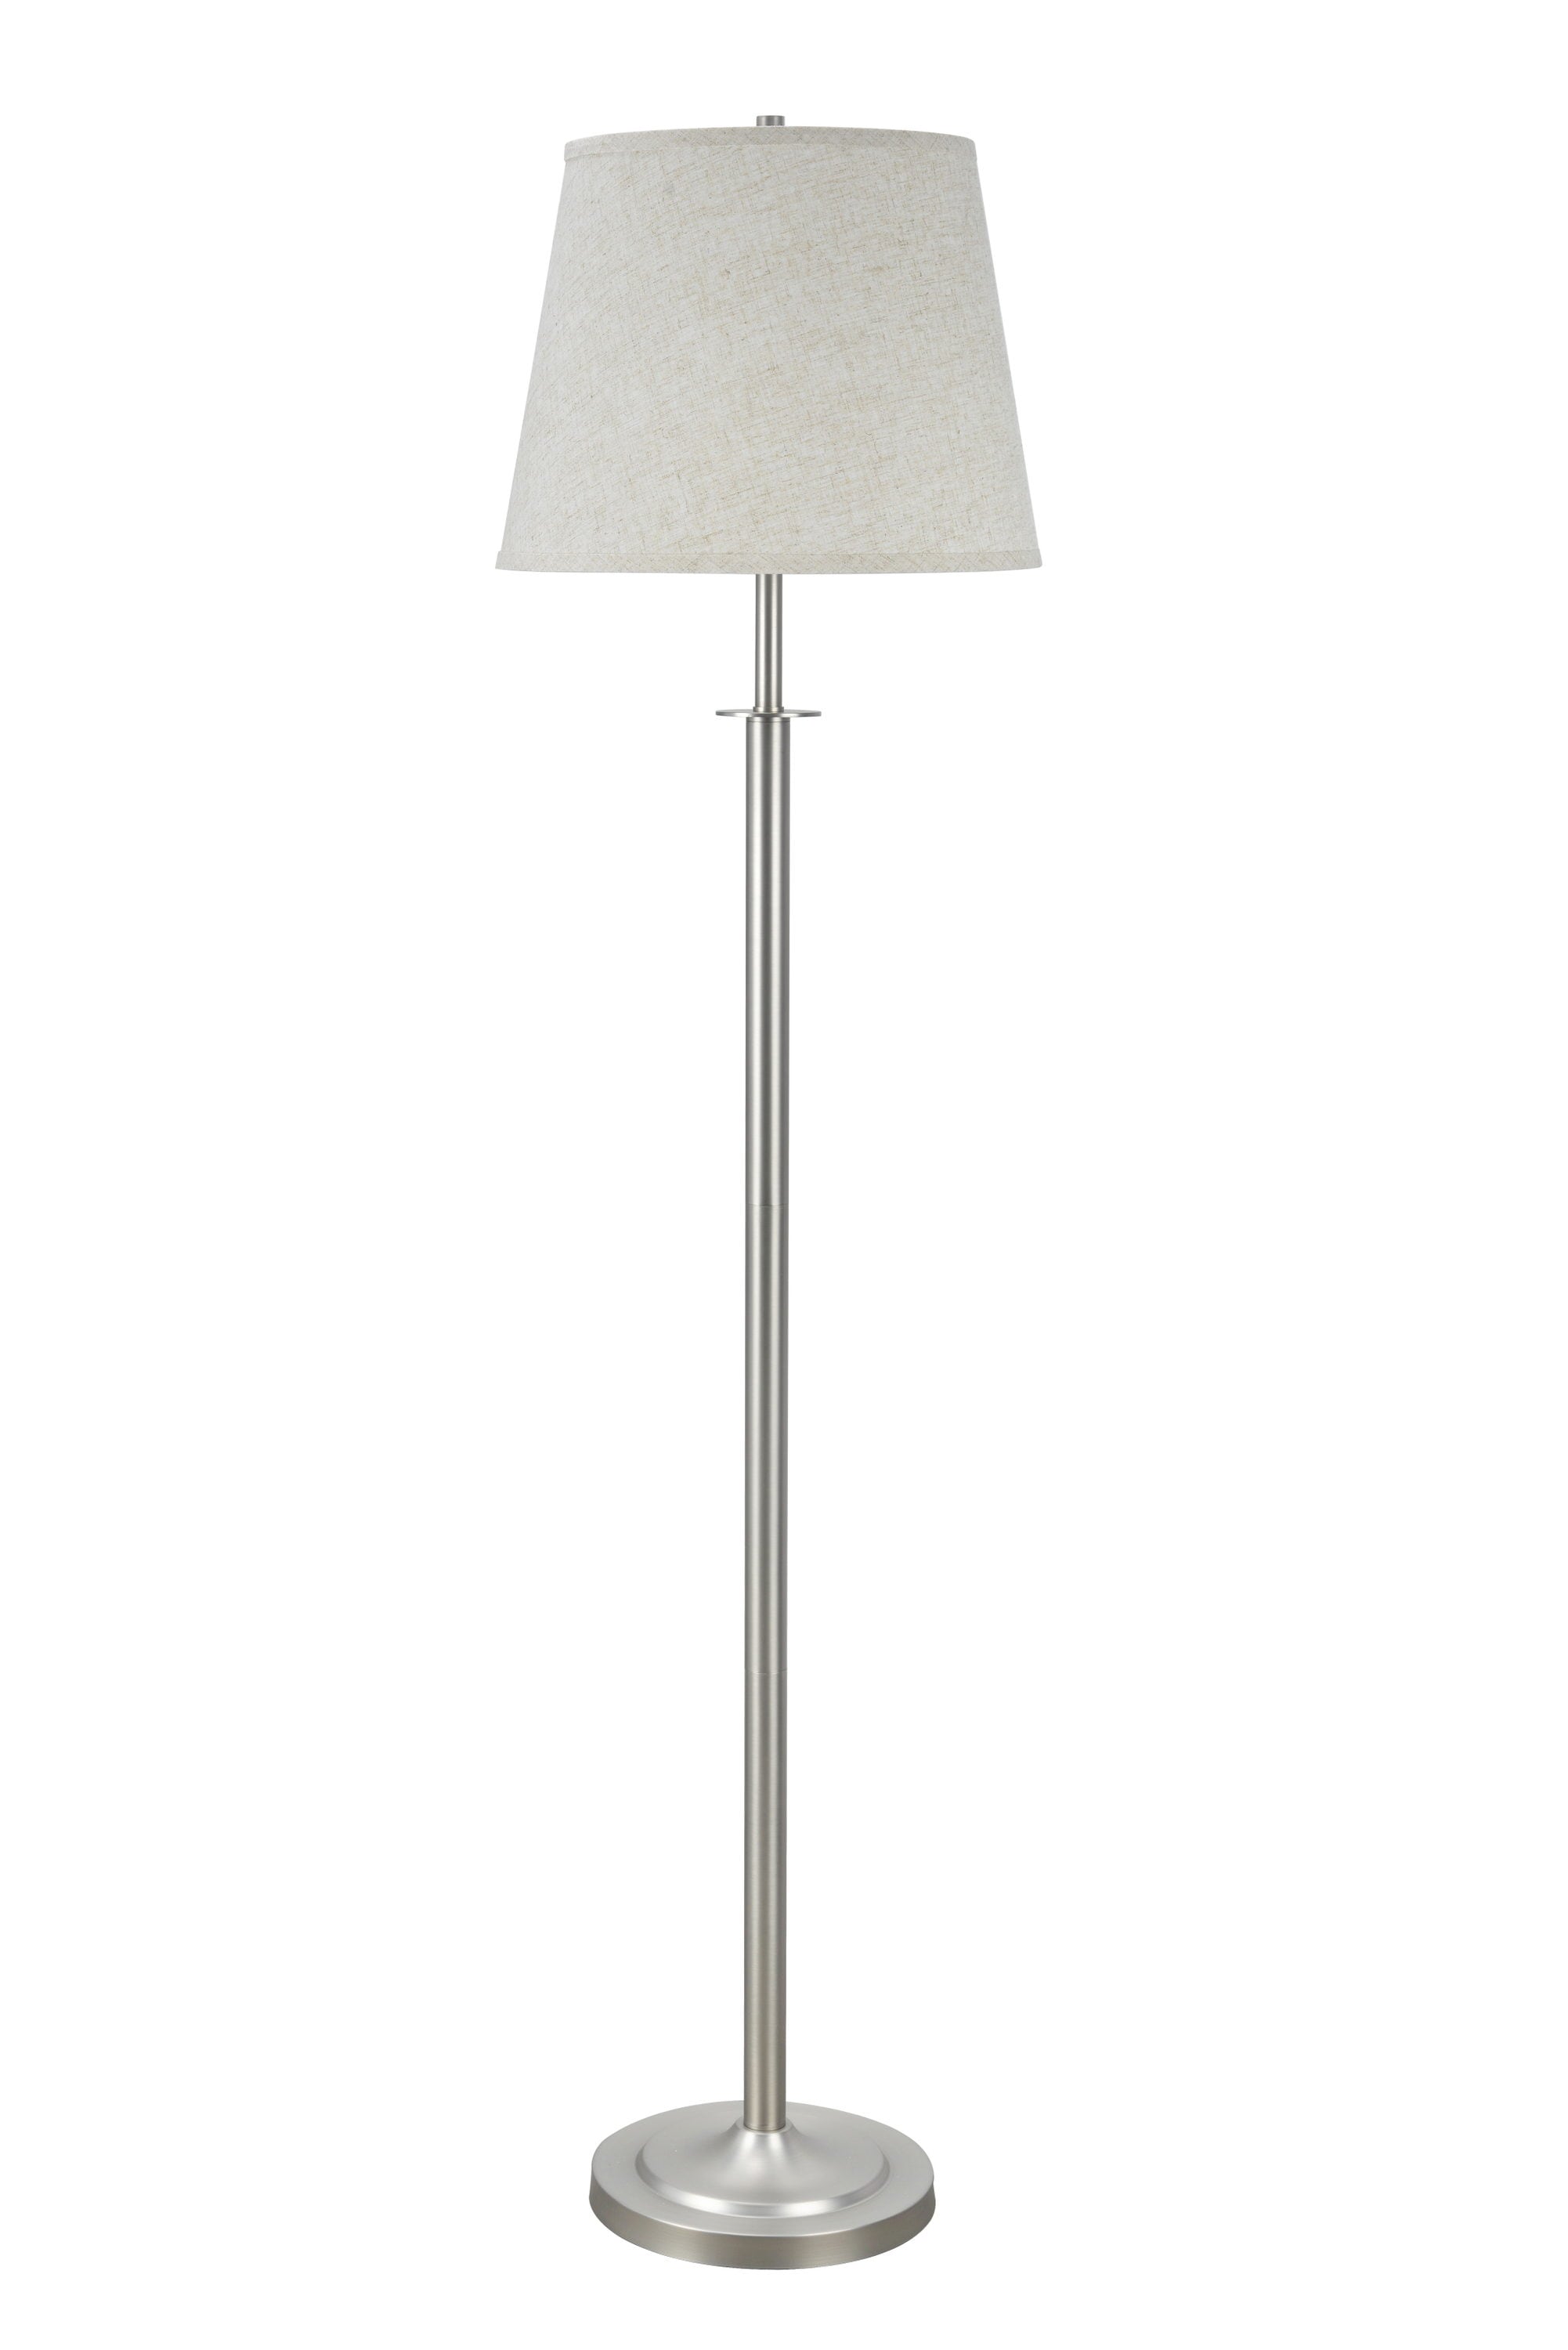 Aspen Creative Corporation 60-in Beige Shaded Floor Lamp in the Floor ...